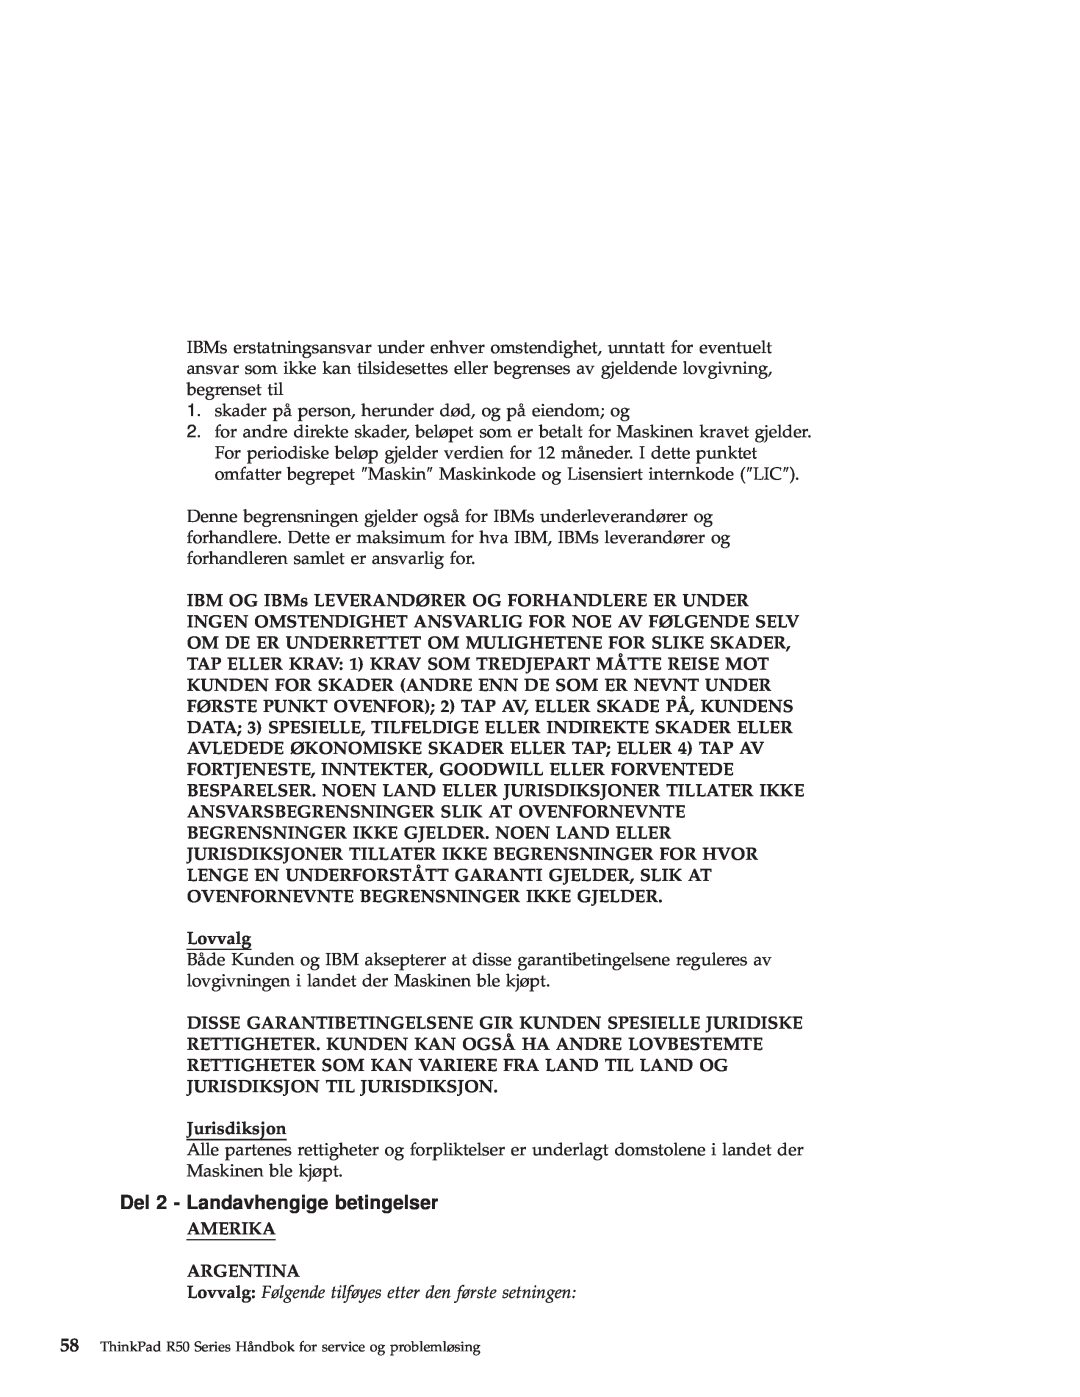 IBM R50 manual Del 2 - Landavhengige betingelser, Lovvalg, Jurisdiksjon, Amerika Argentina 